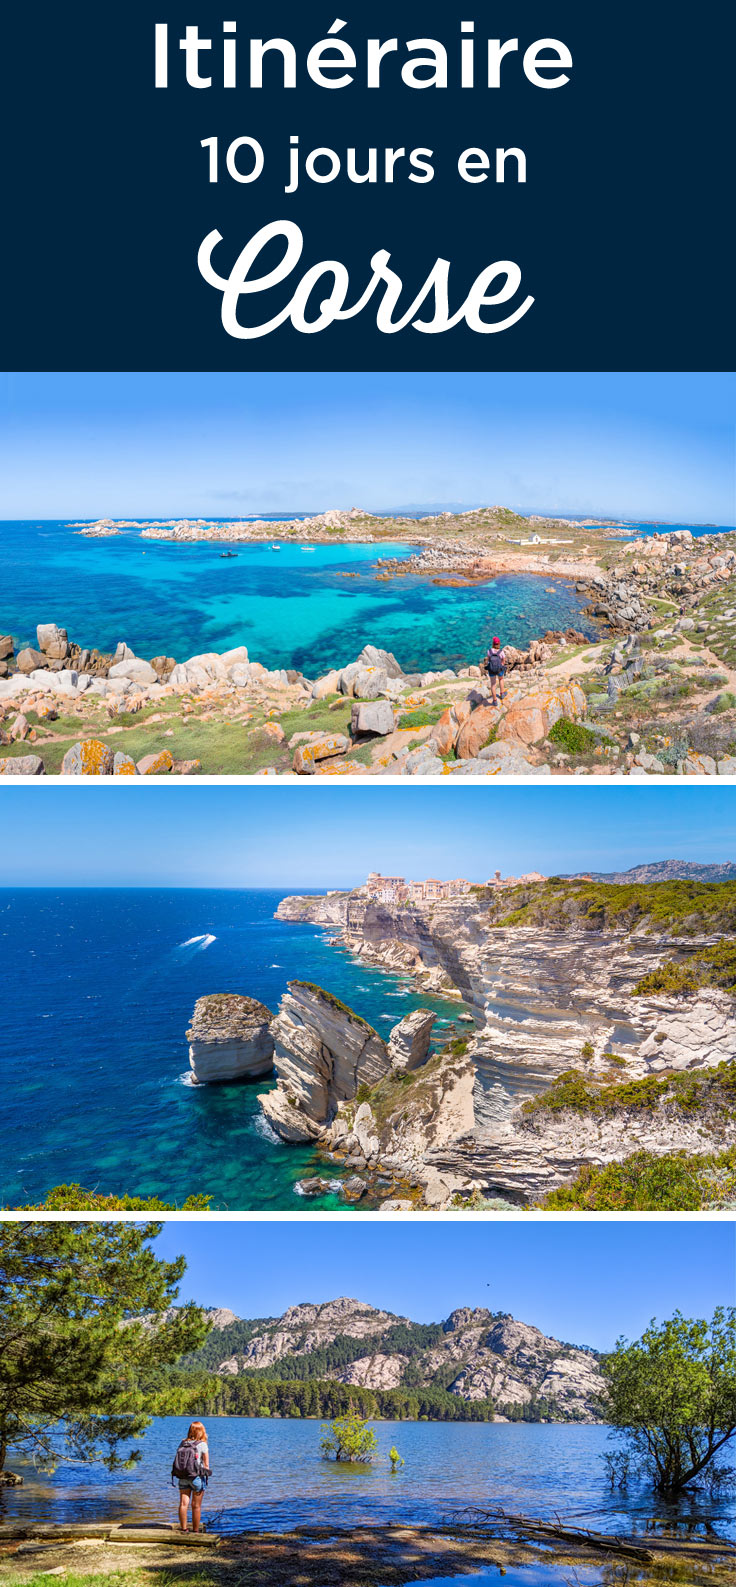 itineraire 10 jours en Corse